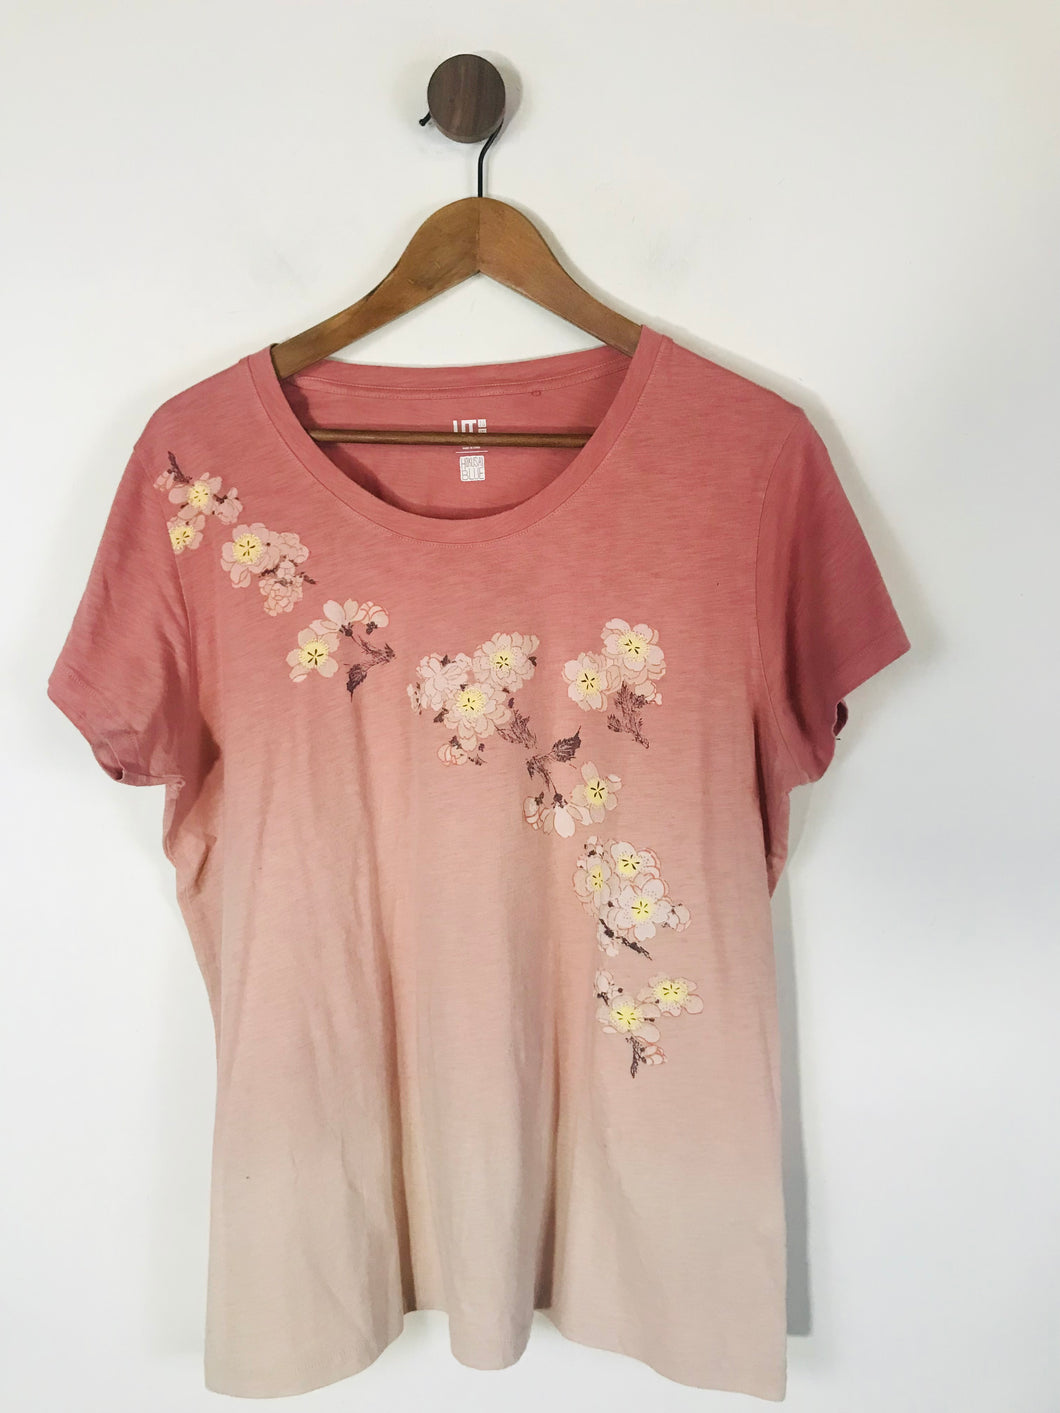 Uniqlo Women's Cotton Floral T-Shirt | XXL UK18-20 | Pink